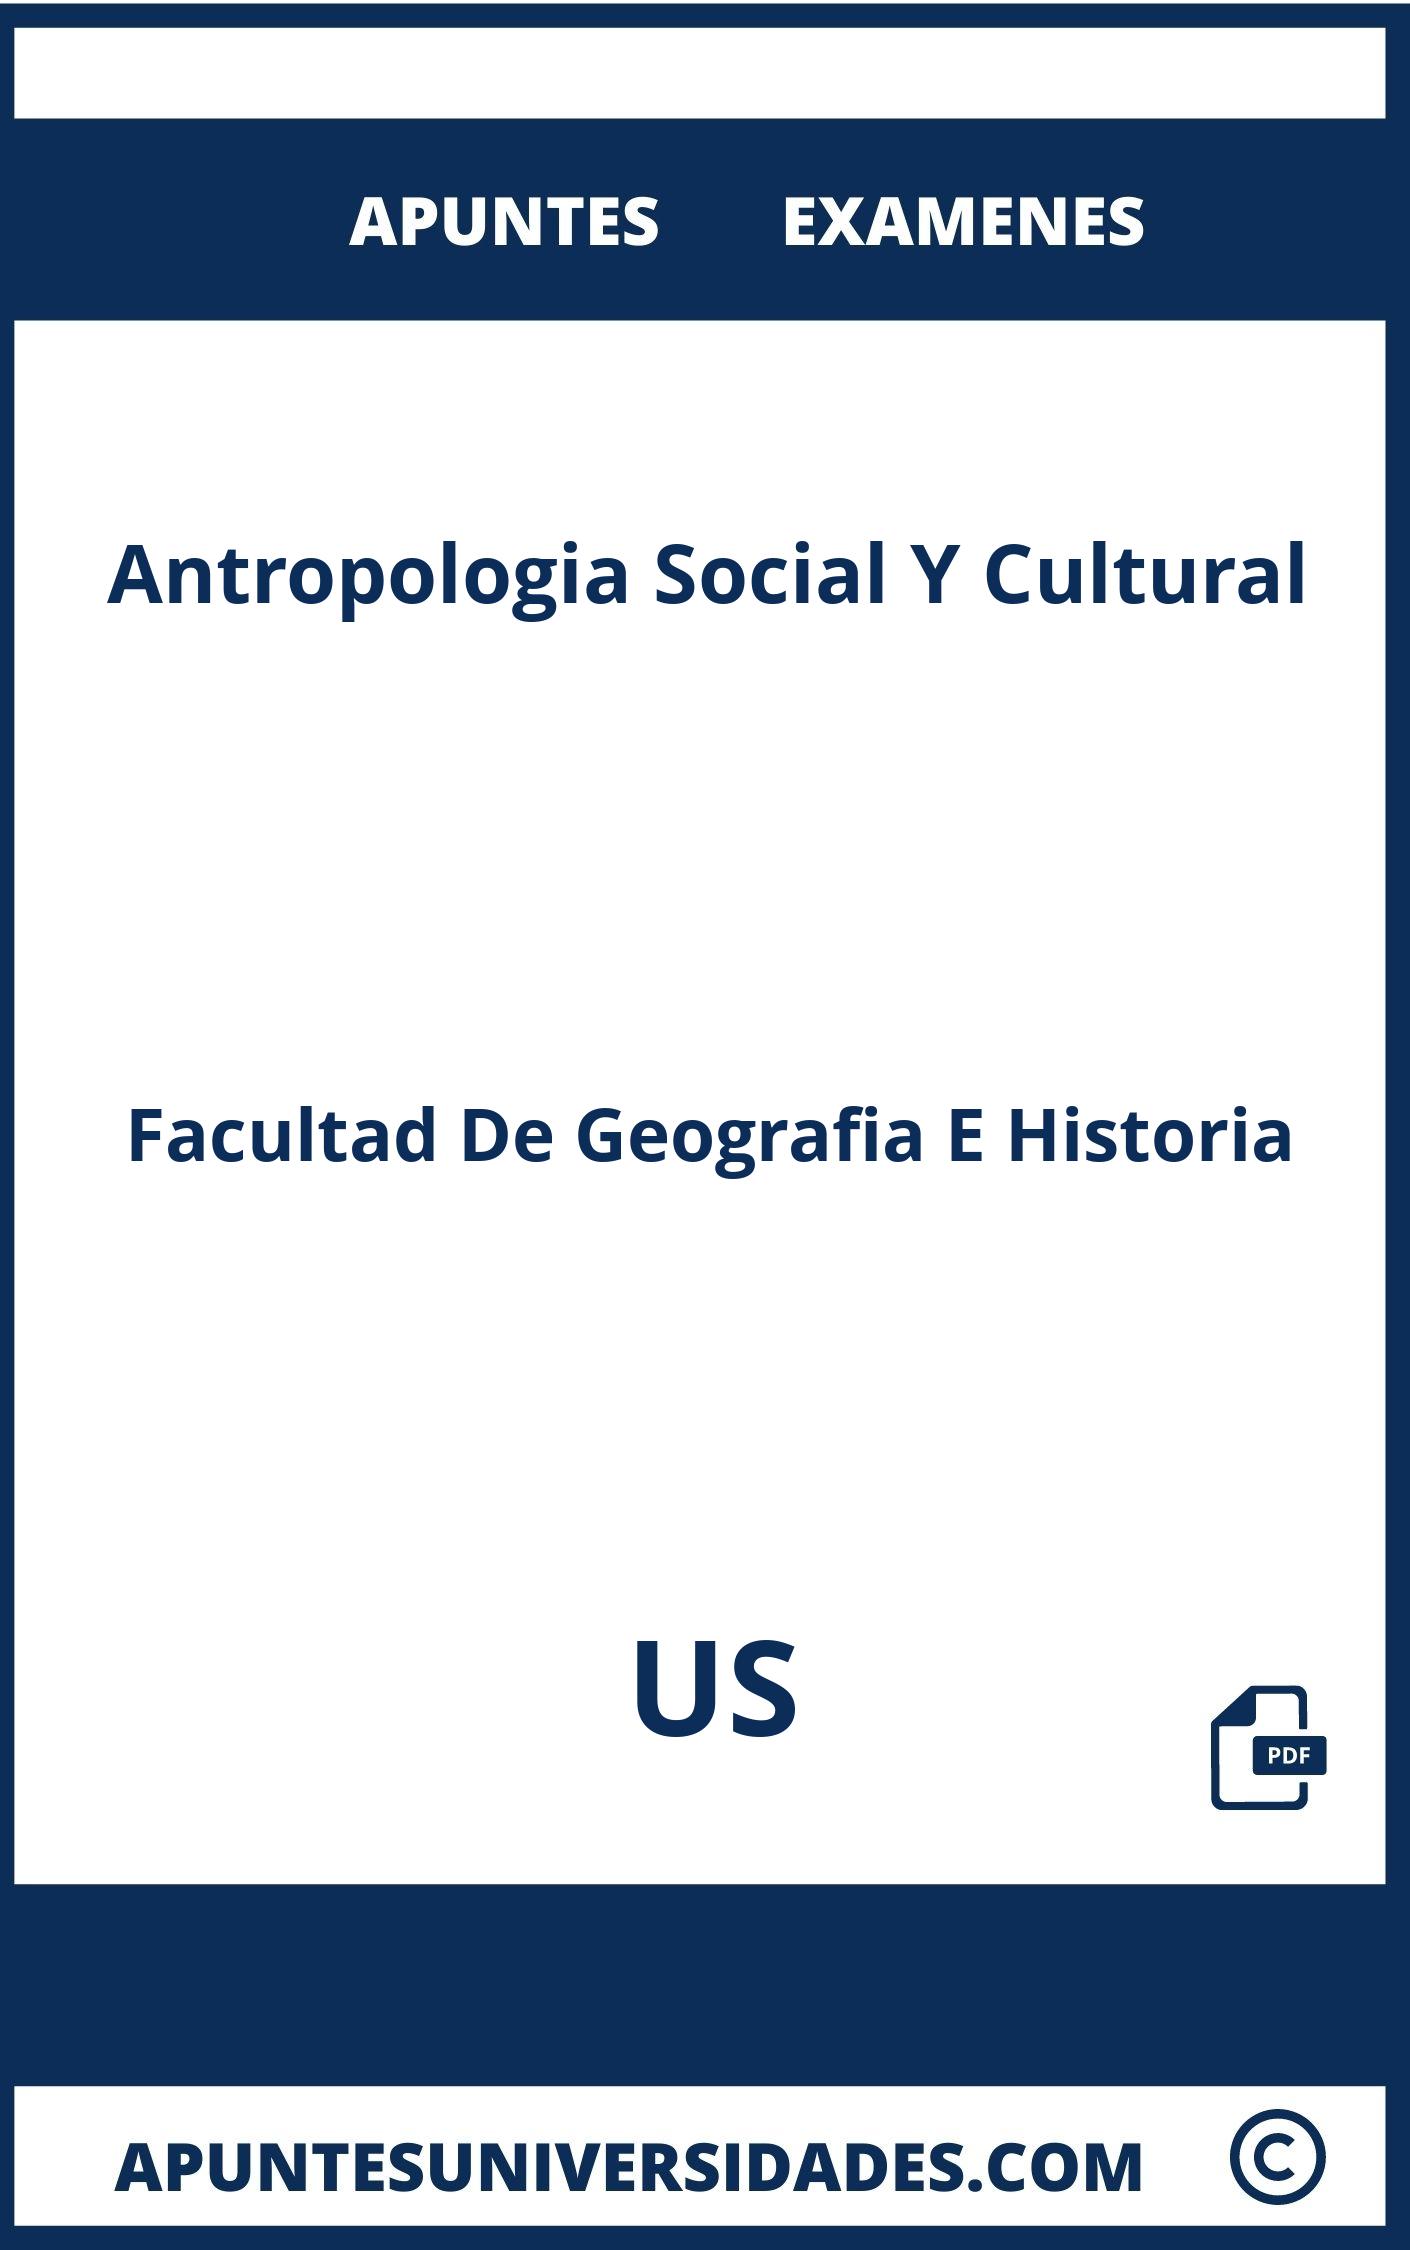 Apuntes Examenes Antropologia Social Y Cultural US